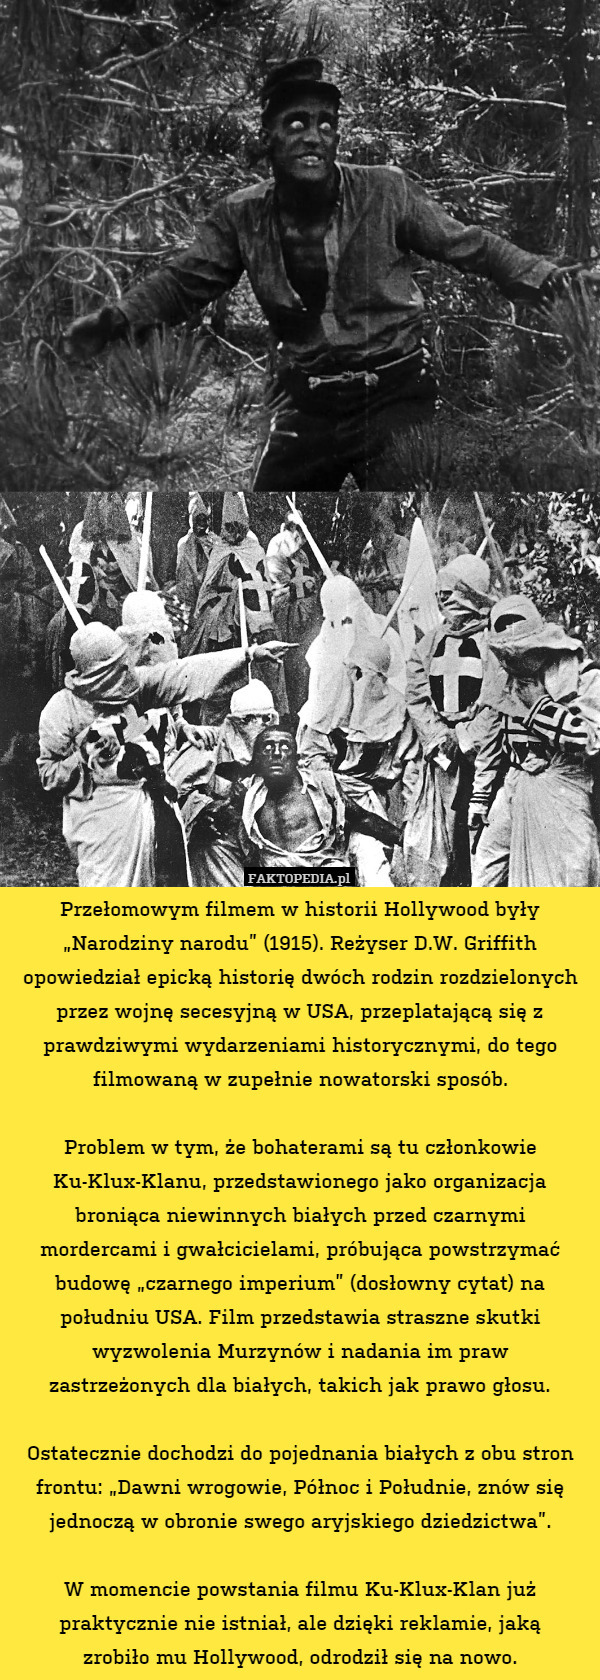 Przełomowym filmem w historii Hollywood były "Narodziny narodu"